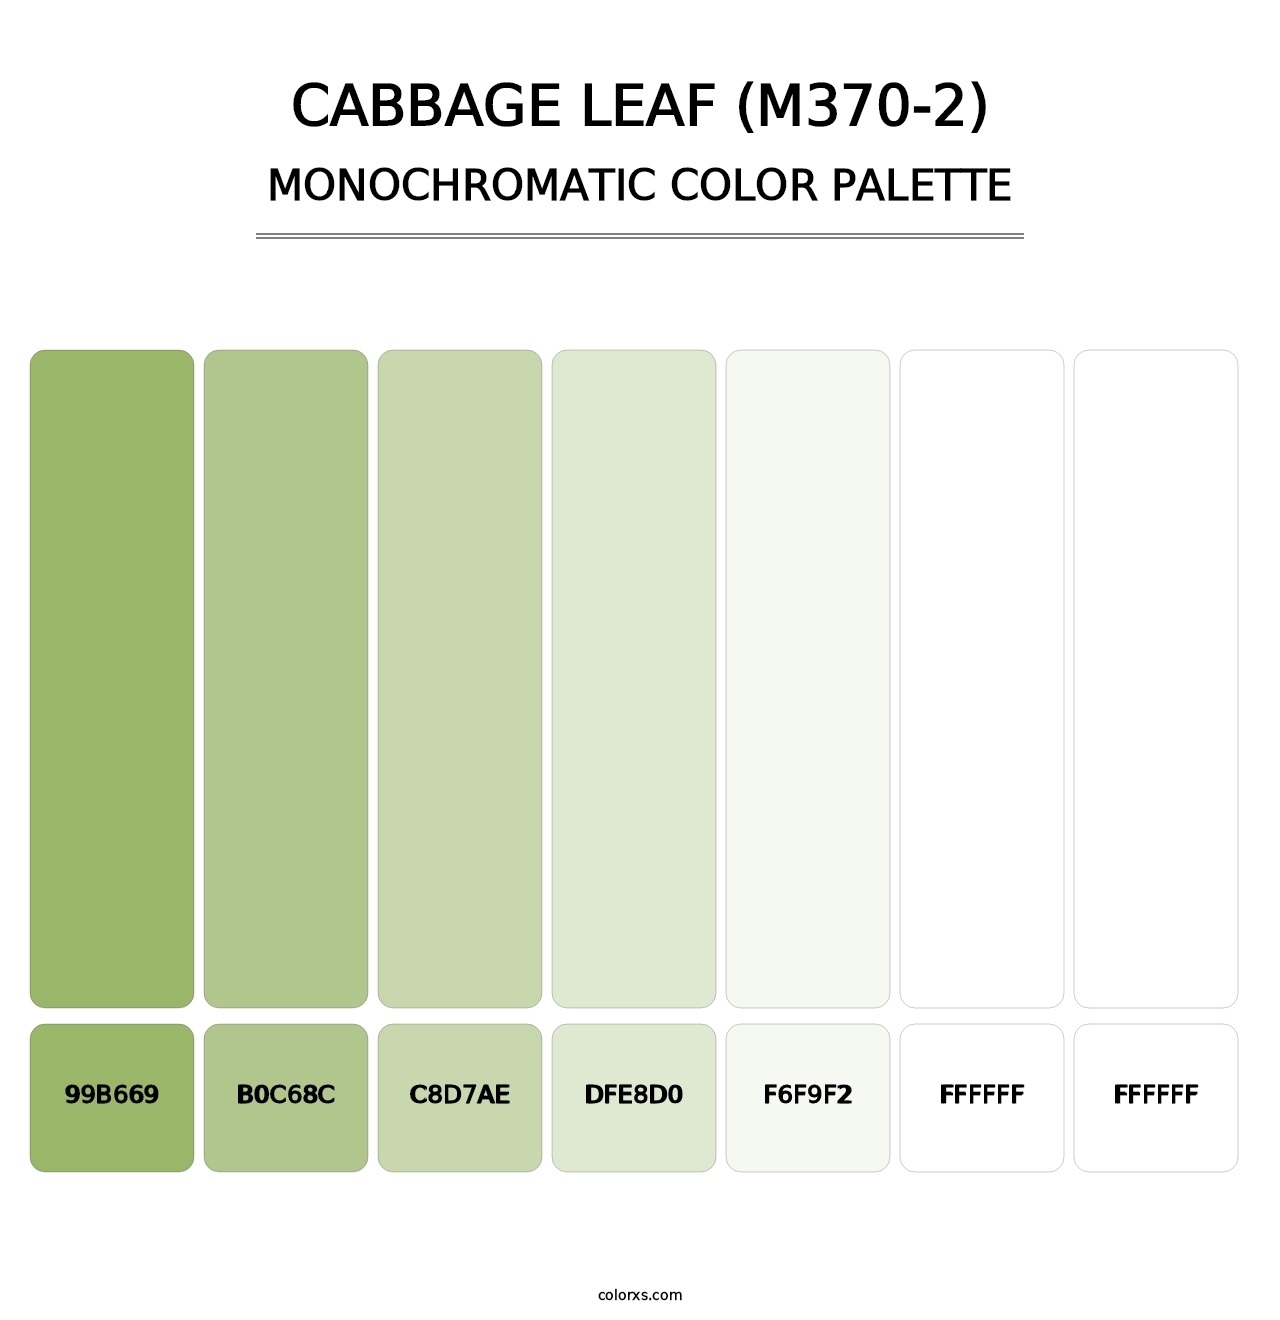 Cabbage Leaf (M370-2) - Monochromatic Color Palette